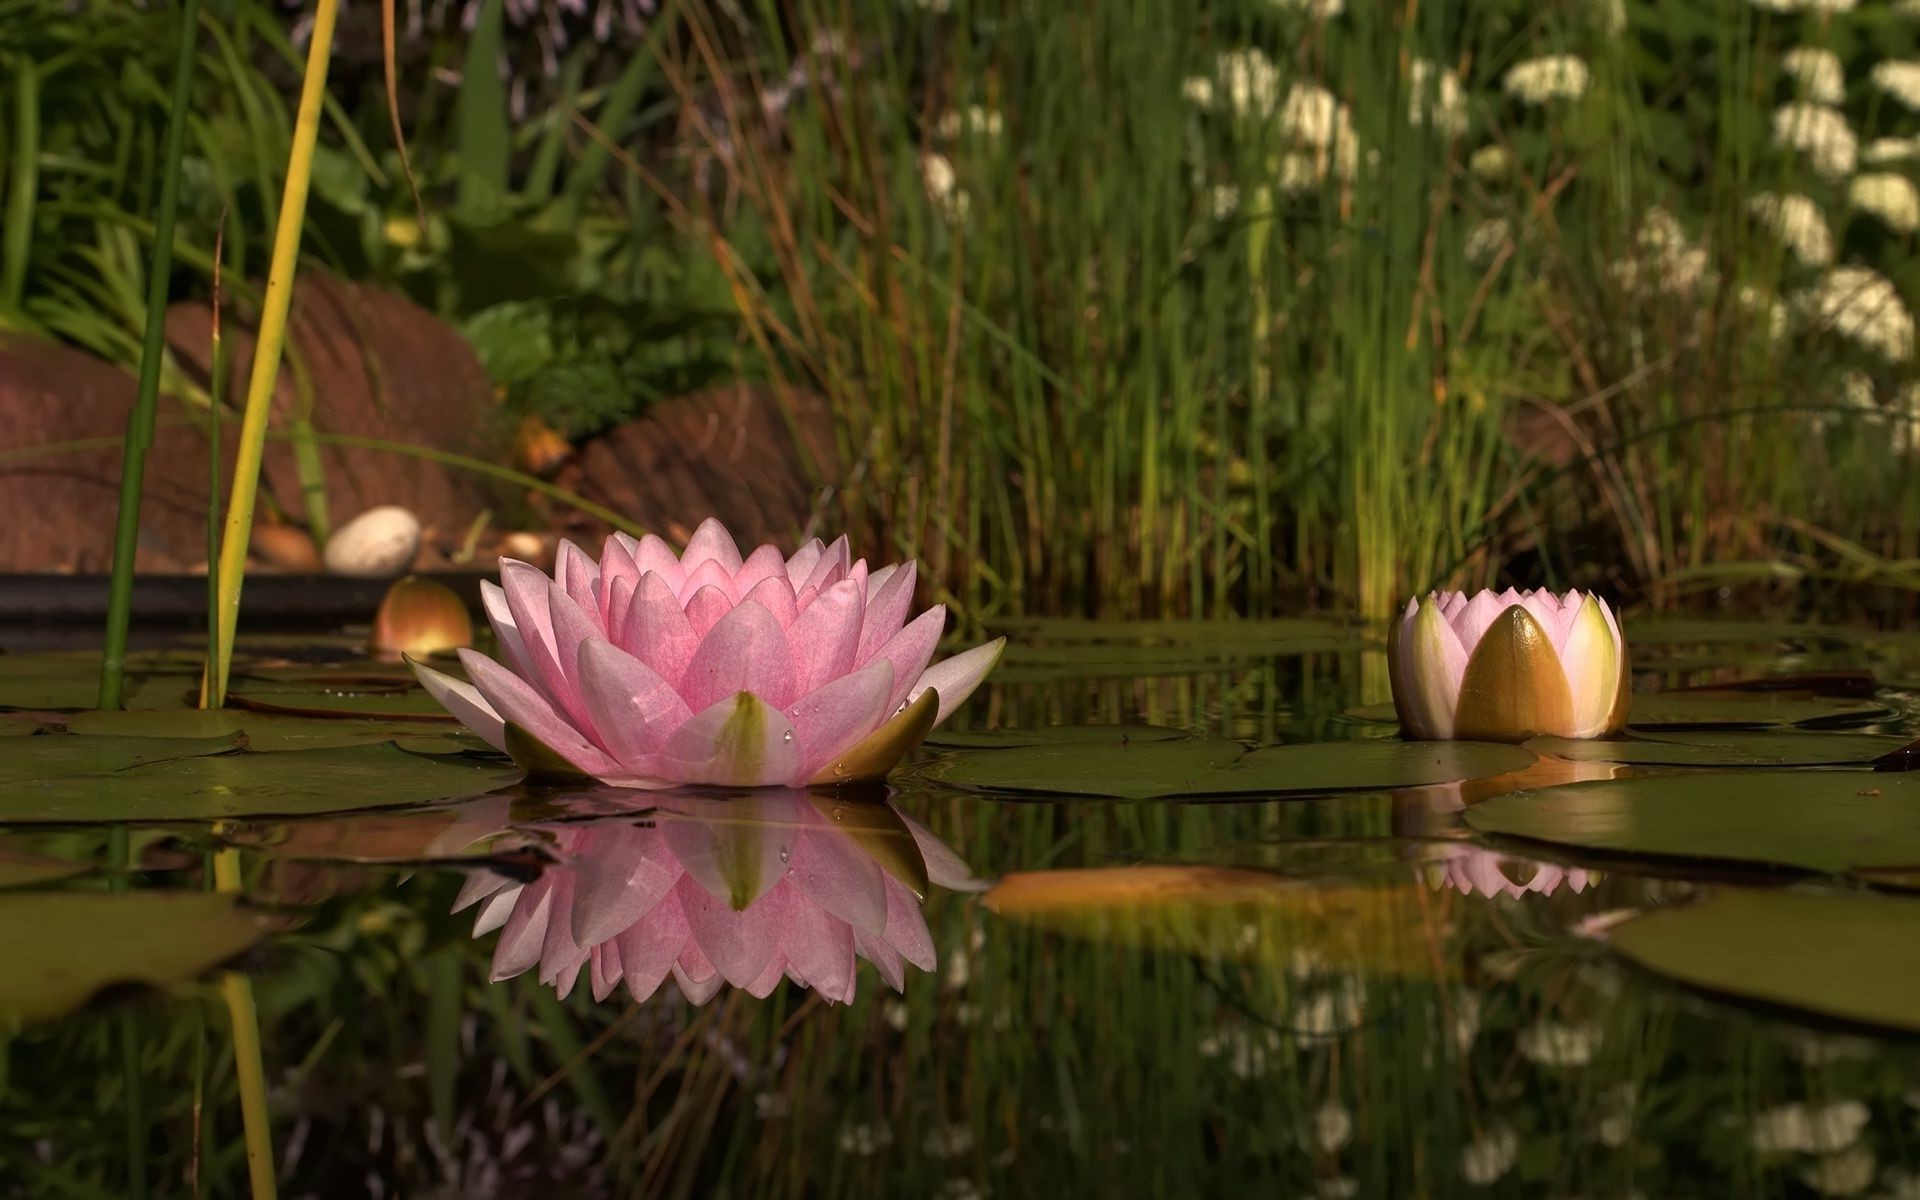 цветы в воде цветок природа сад бассейн флора блюминг лето лист лотос красивые парк цвет на открытом воздухе трава лили цветочные пасха сезон романтический